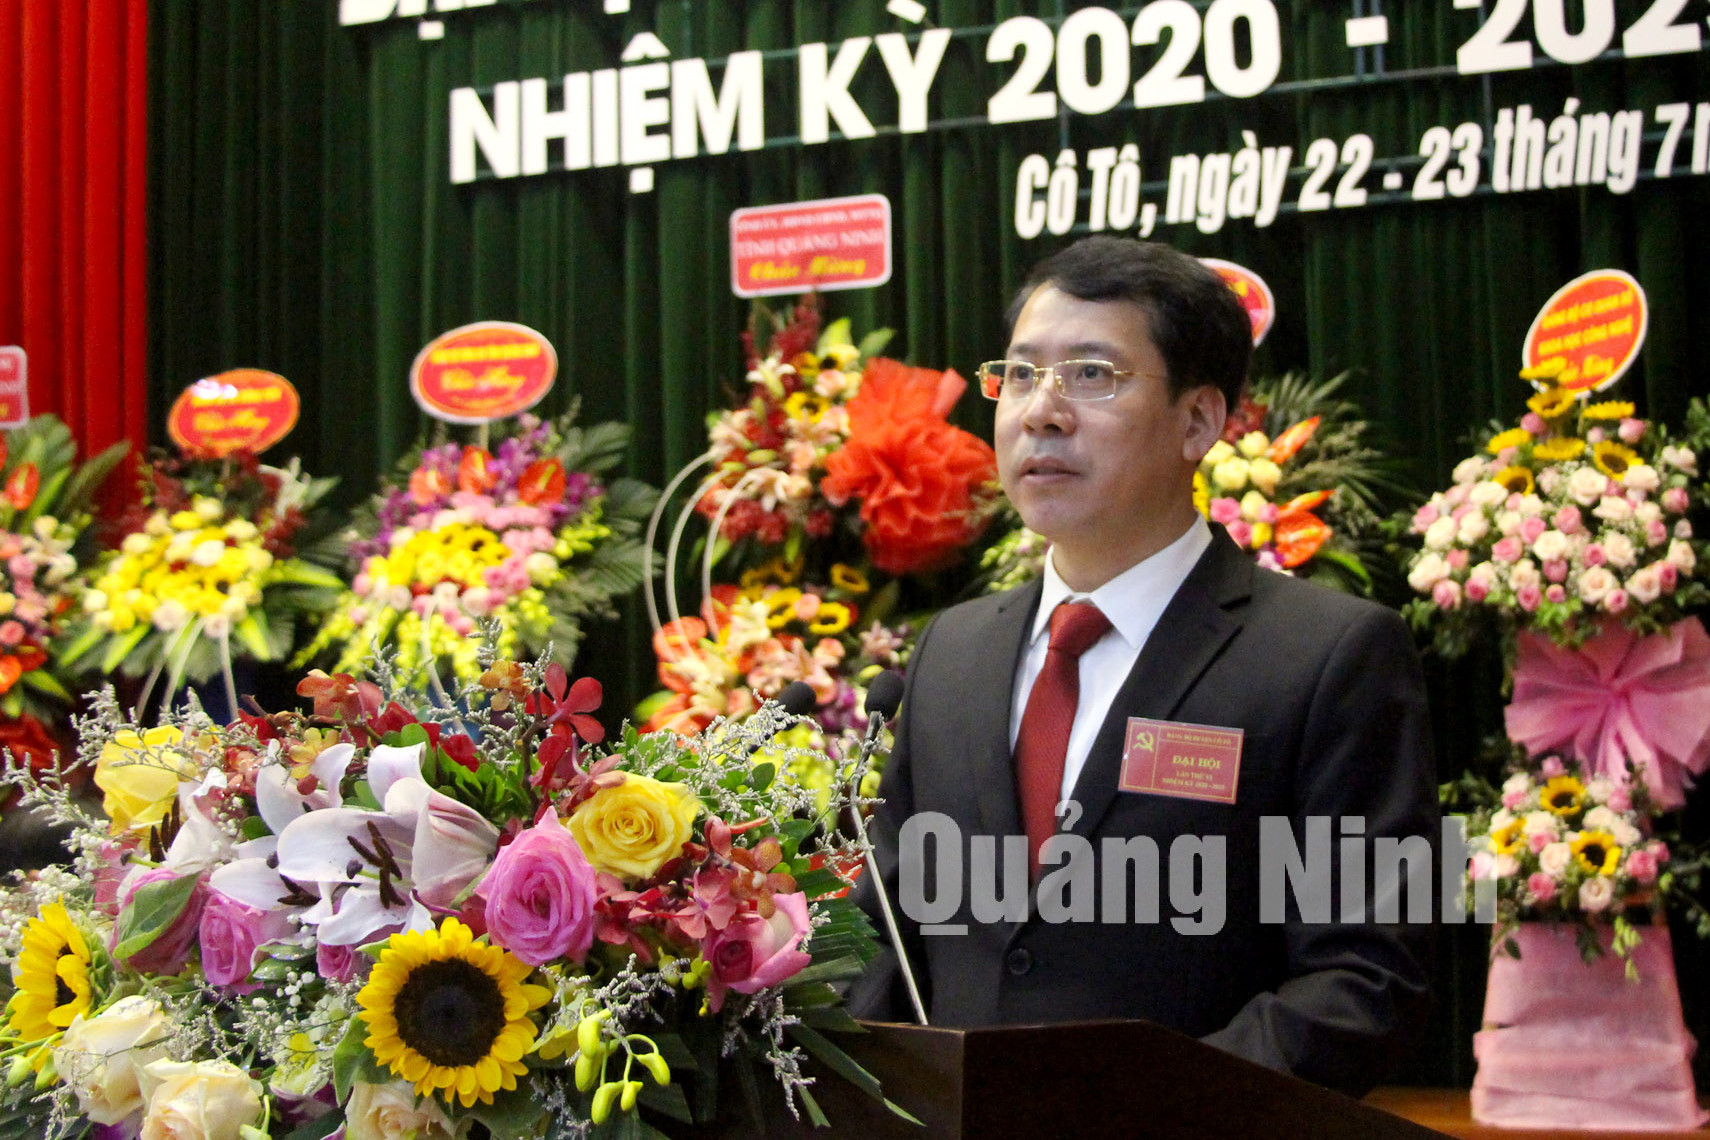 Đồng chí Trần Như Long, Bí thư Huyện ủy, Chủ tịch UBND huyện Cô Tô trình bày báo cáo chính trị tại đại hội (7-2020). Ảnh: Thu Chung